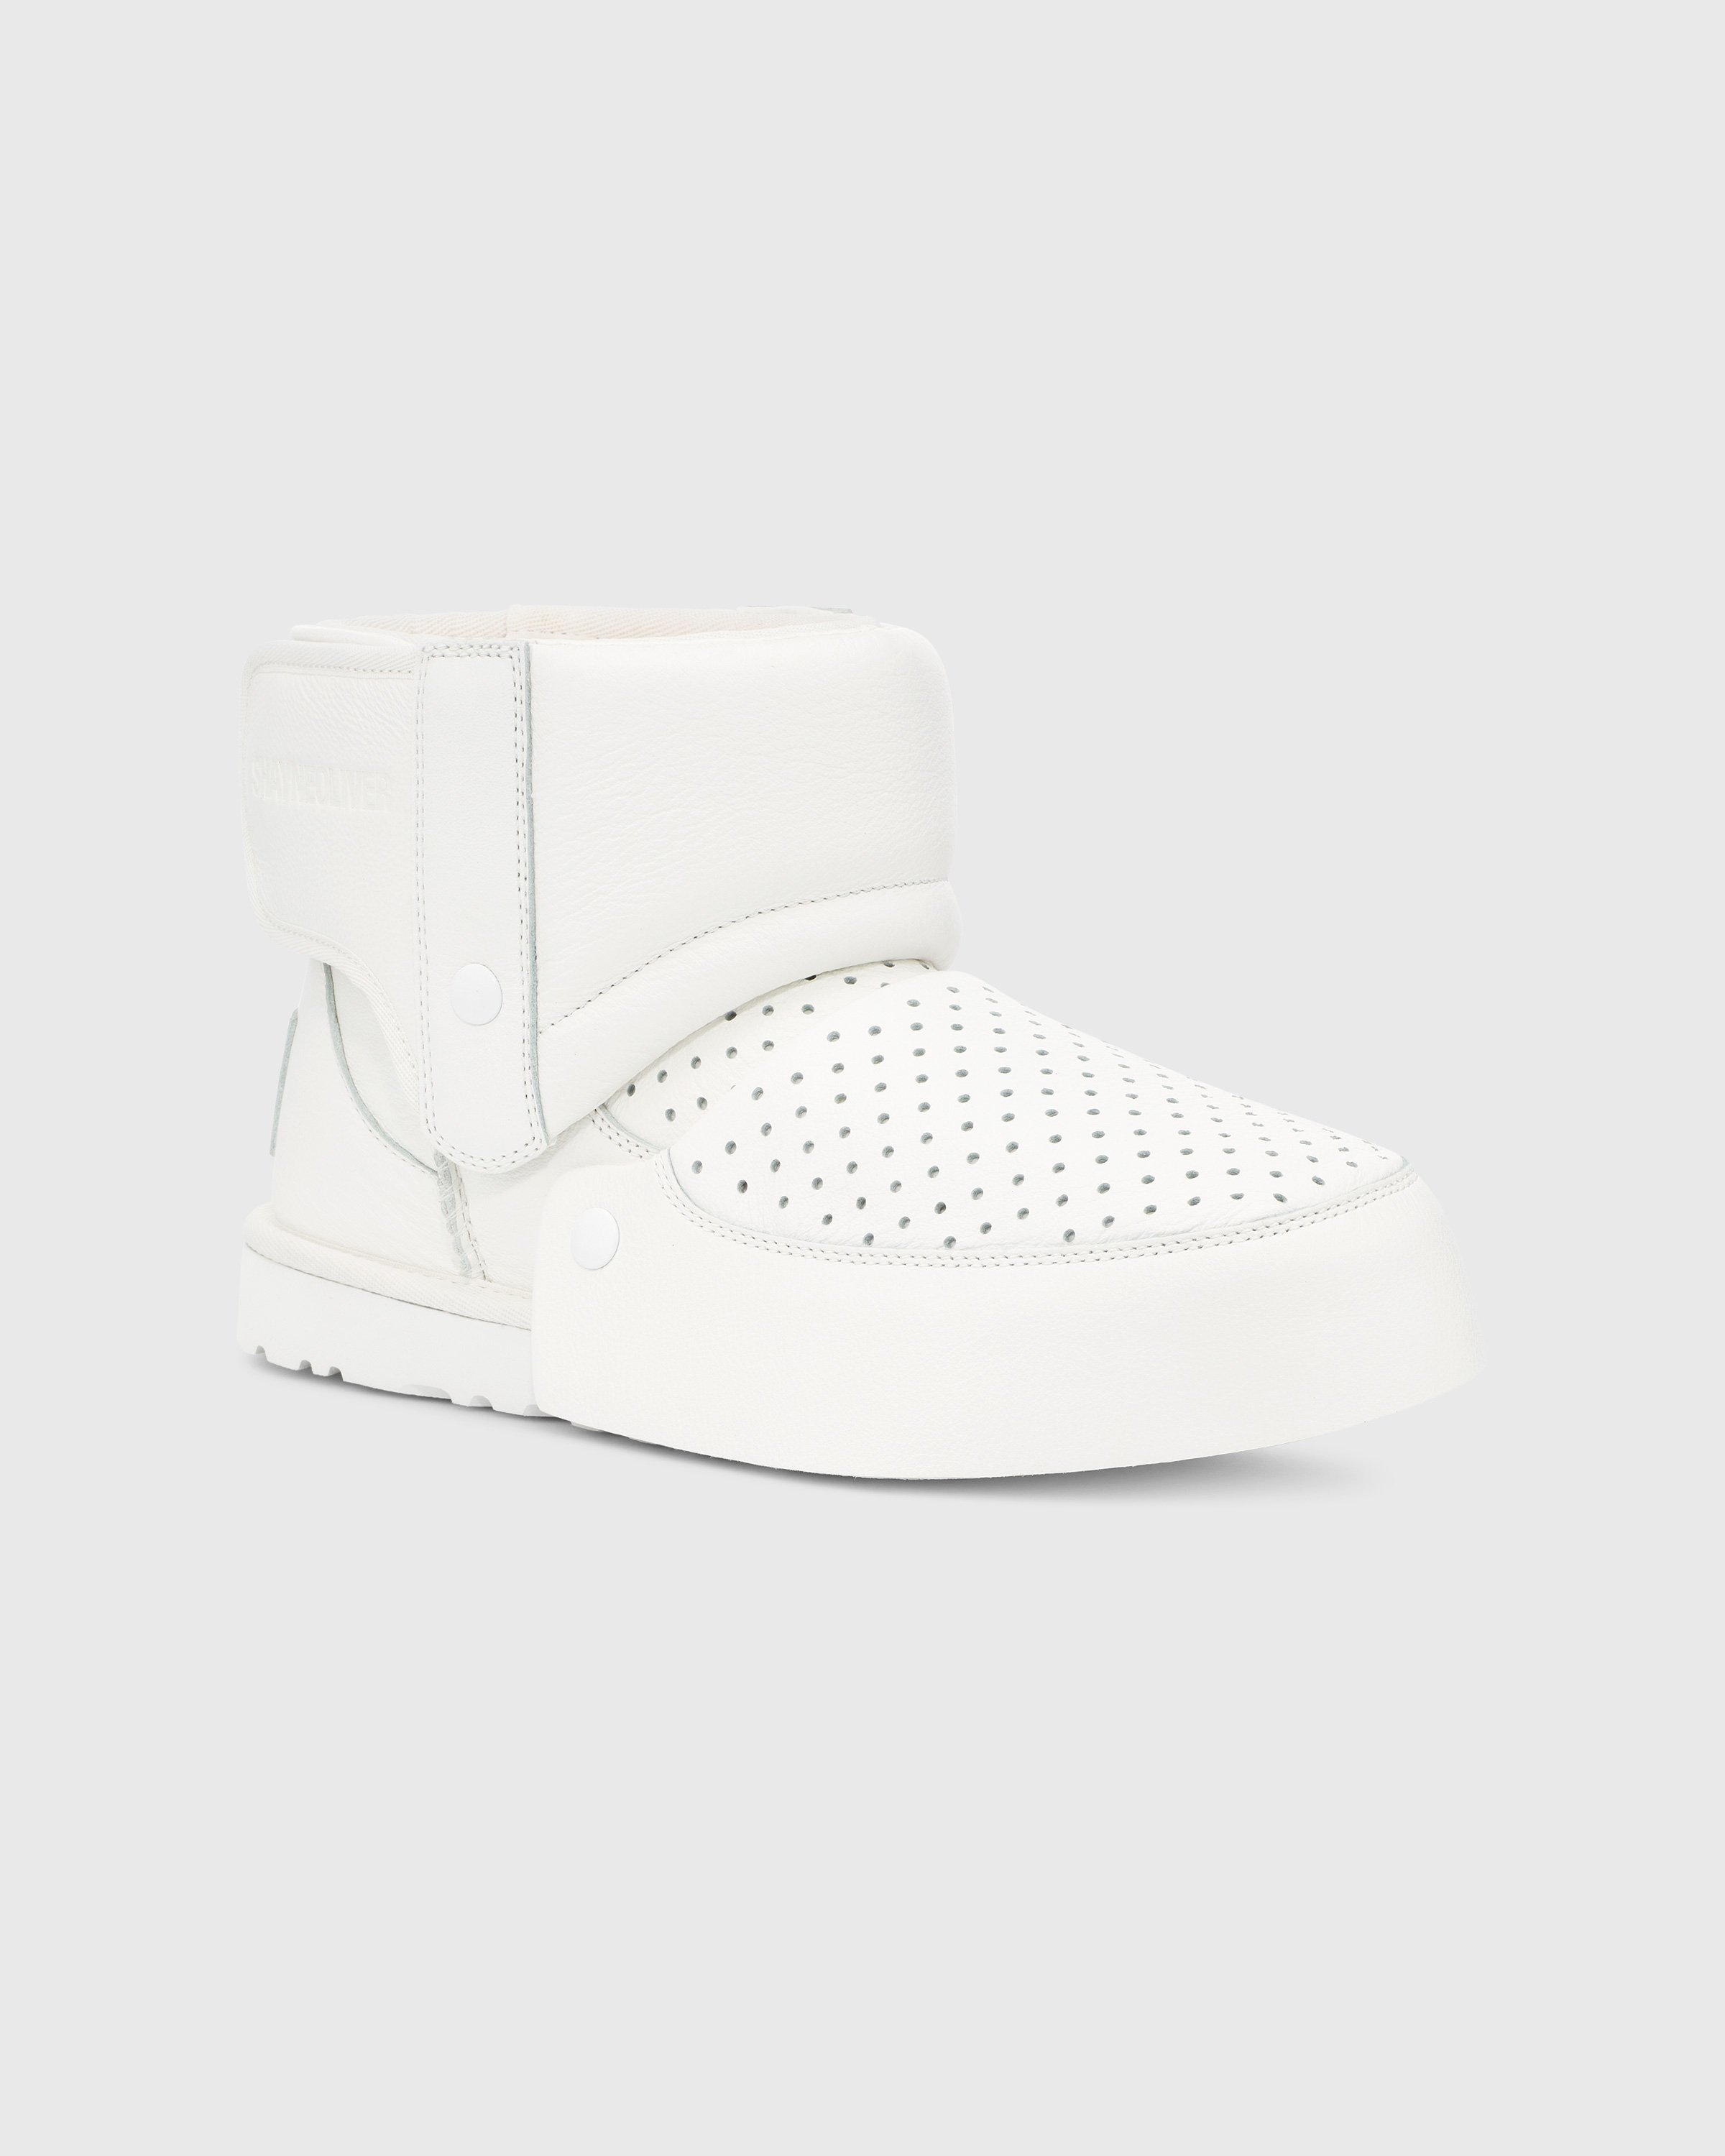 Ugg x Shayne Oliver - Mini Boot White - Footwear - White - Image 5